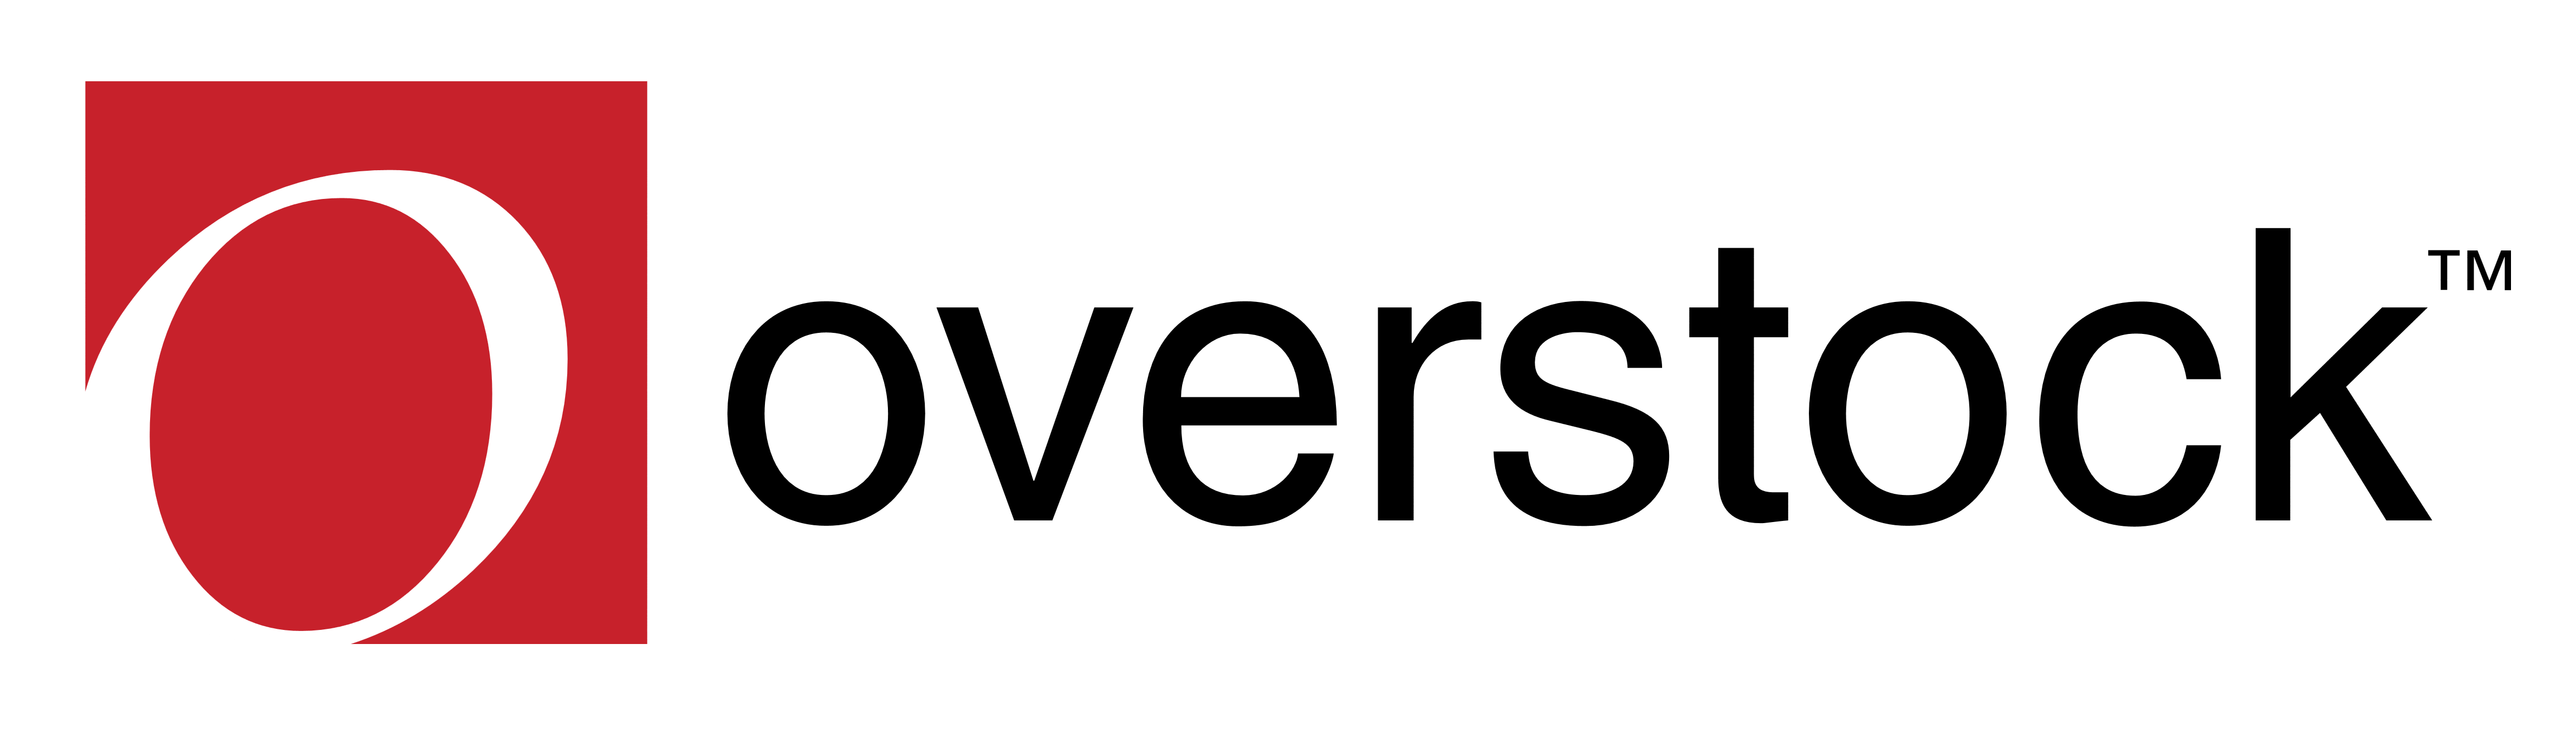 Overstock Logo - Overstock